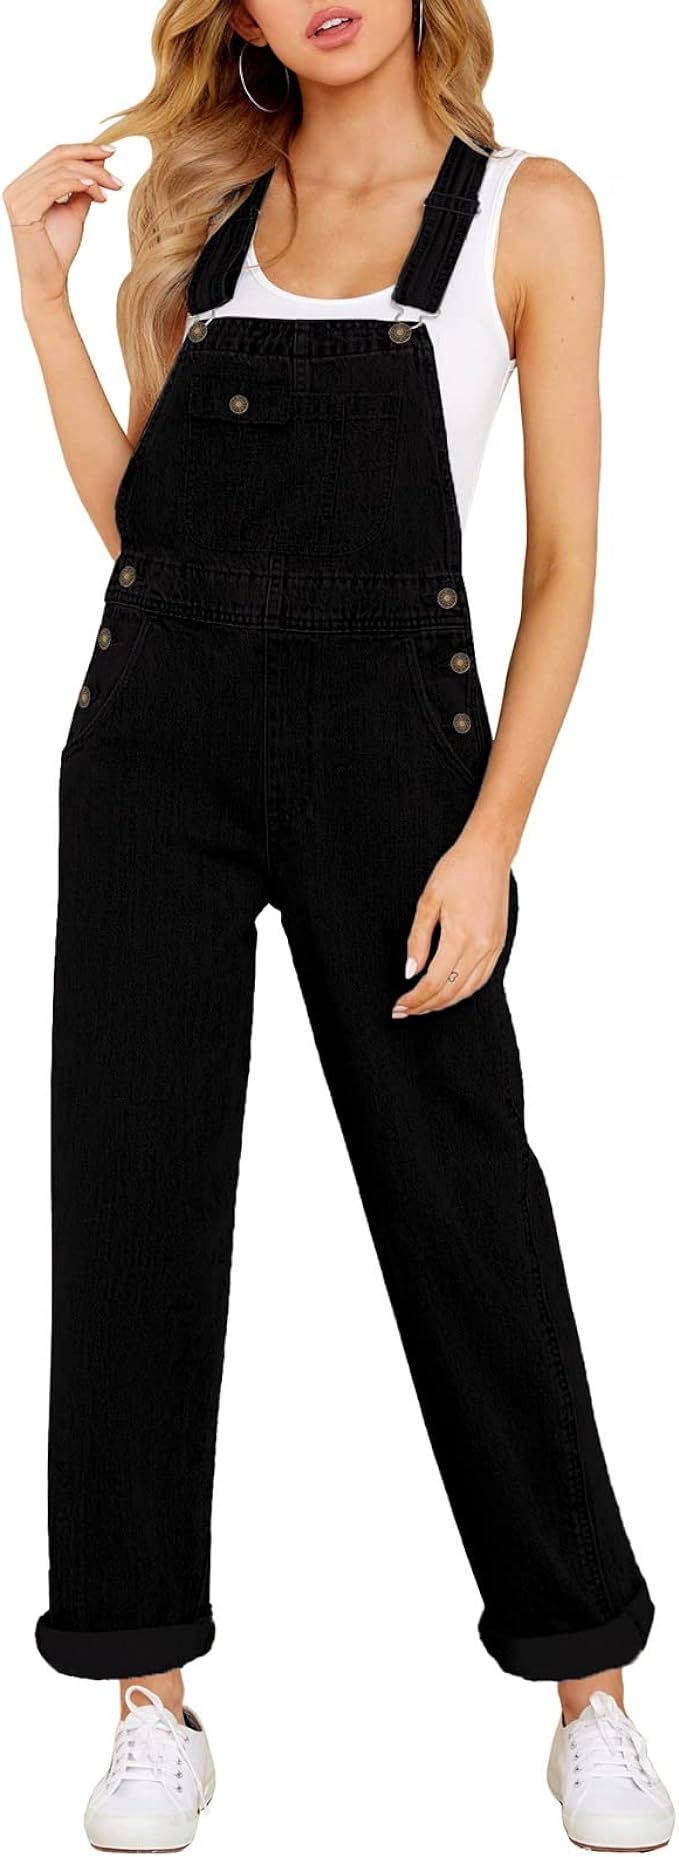 Vetinee Womens Overalls Denim Stretch Straight Leg Jeans Overall Regular Fit Bib Jean Jumpsuits C... | Amazon (US)